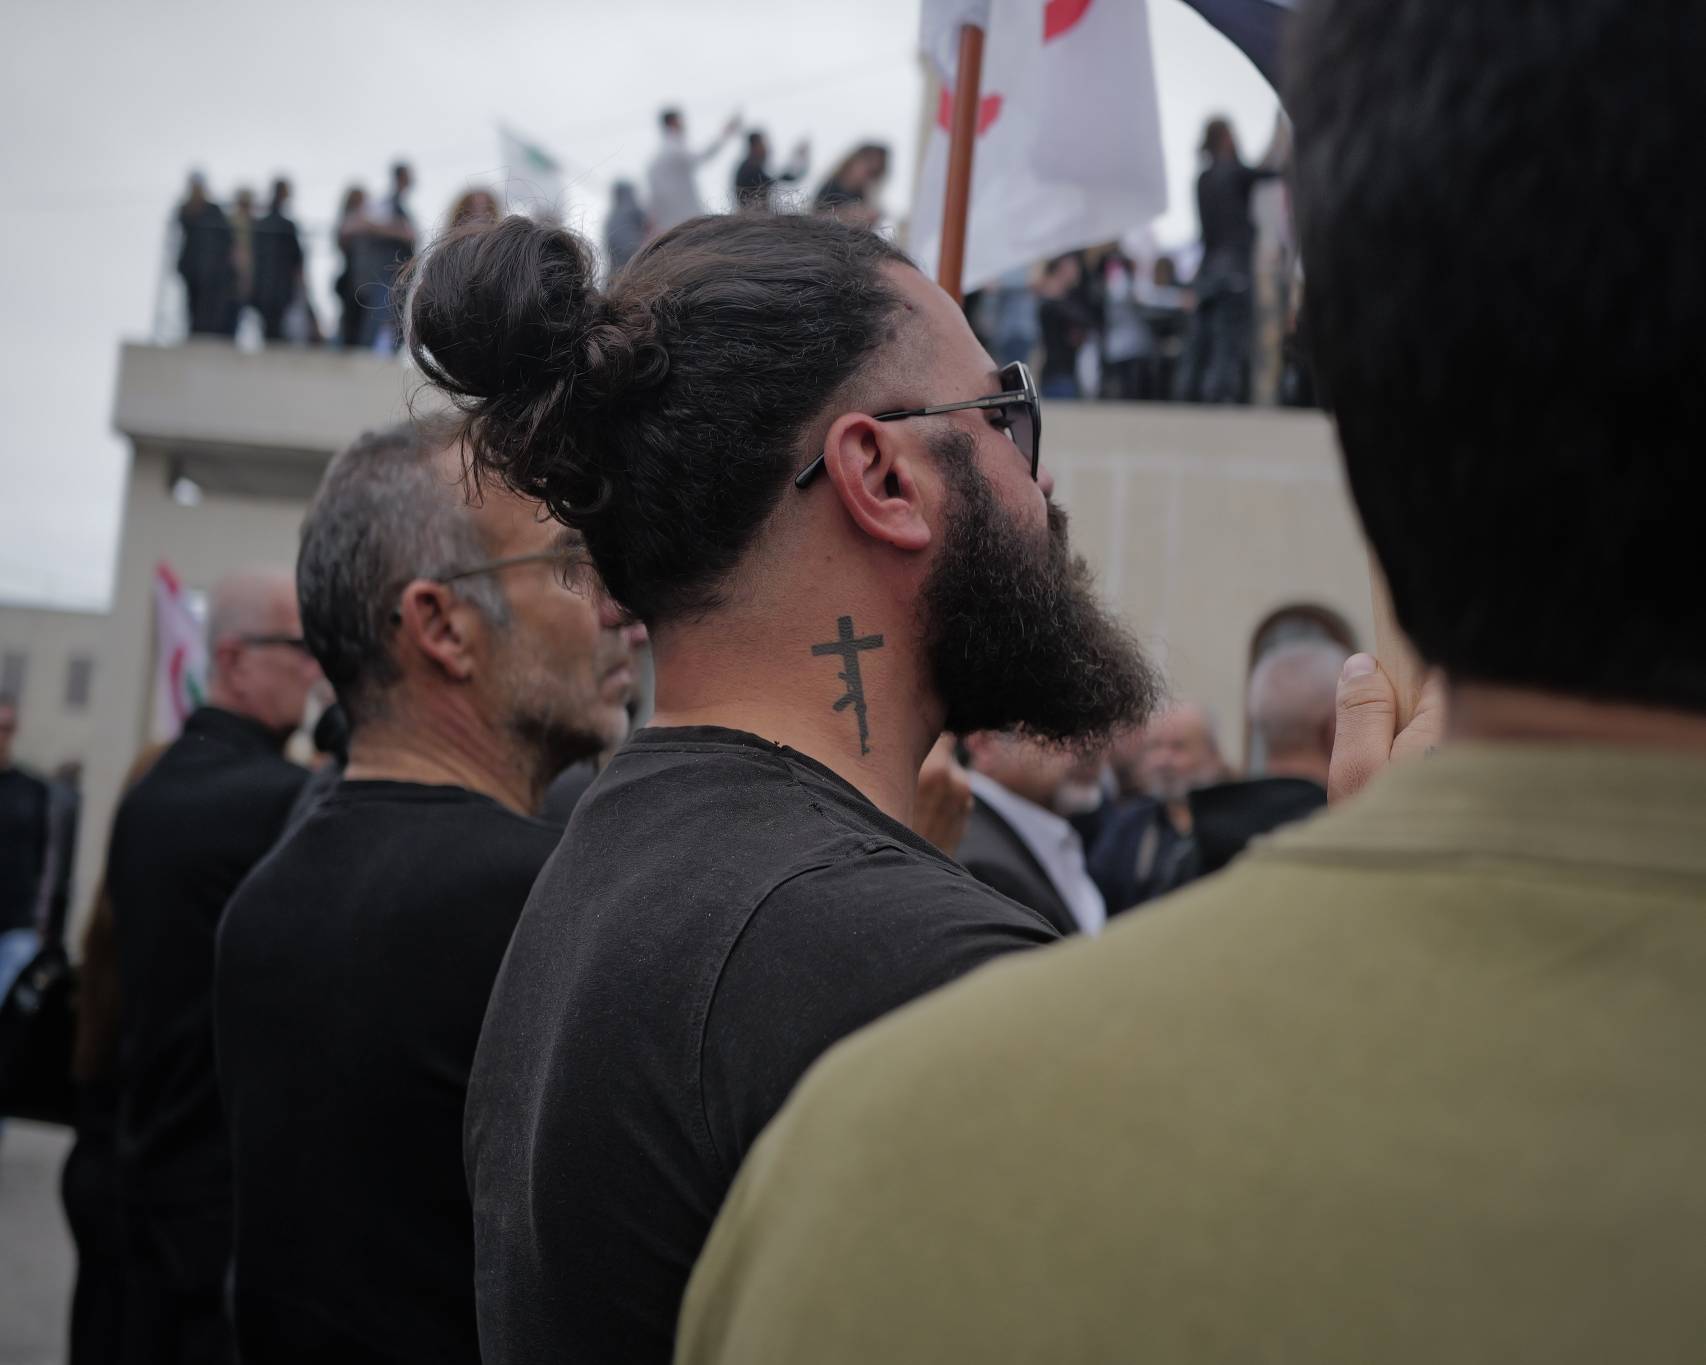 Dans la foule, de nombreux partisans arborent des signes religieux ostensibles. Certains à même leur peau... Photo Matthieu Karam